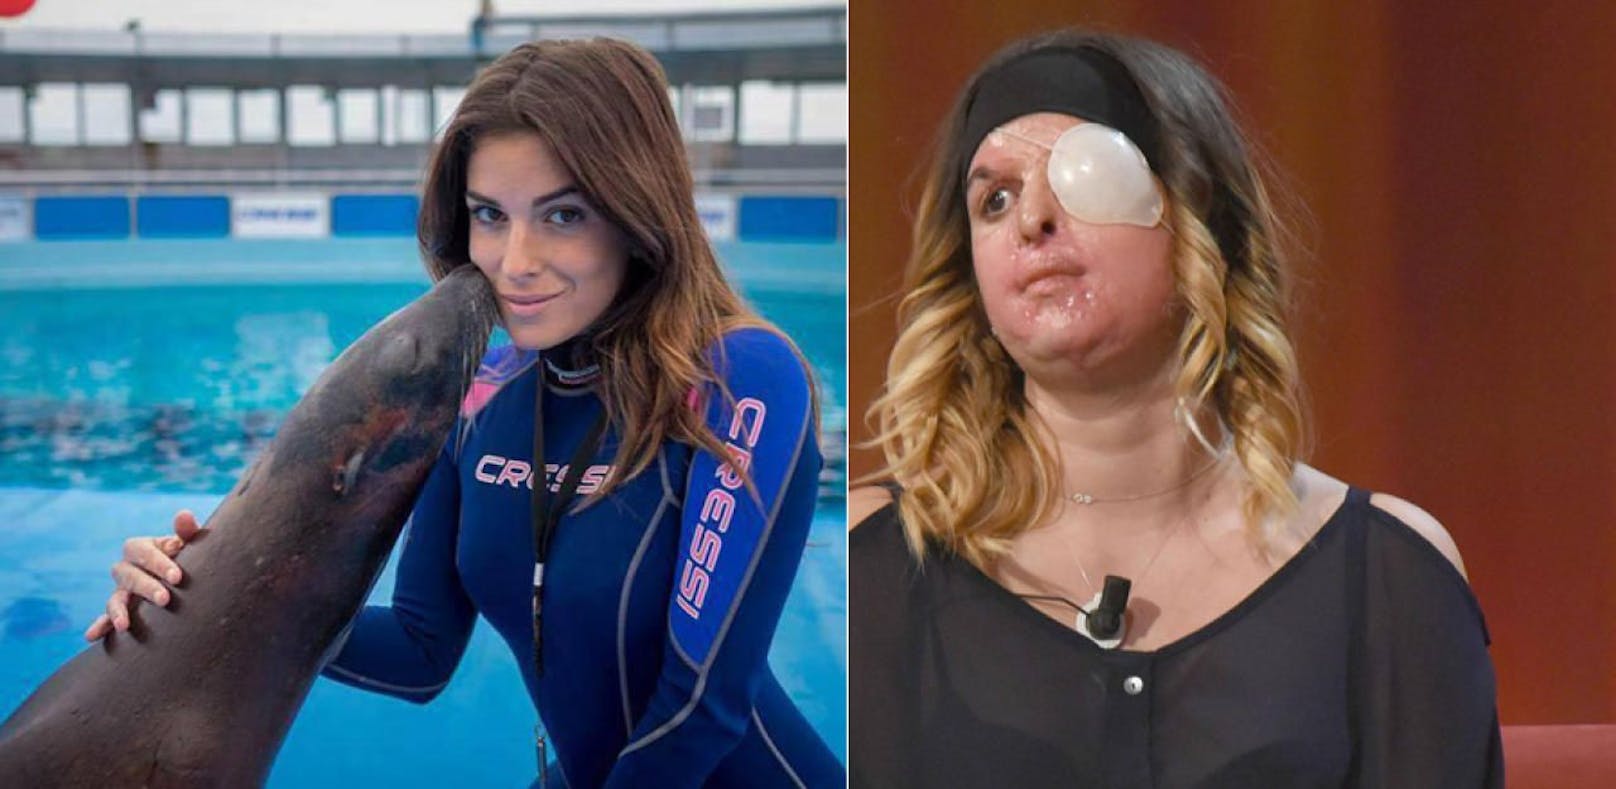 Säureanschlag: Ex-Miss zeigt erstmals ihr Gesicht